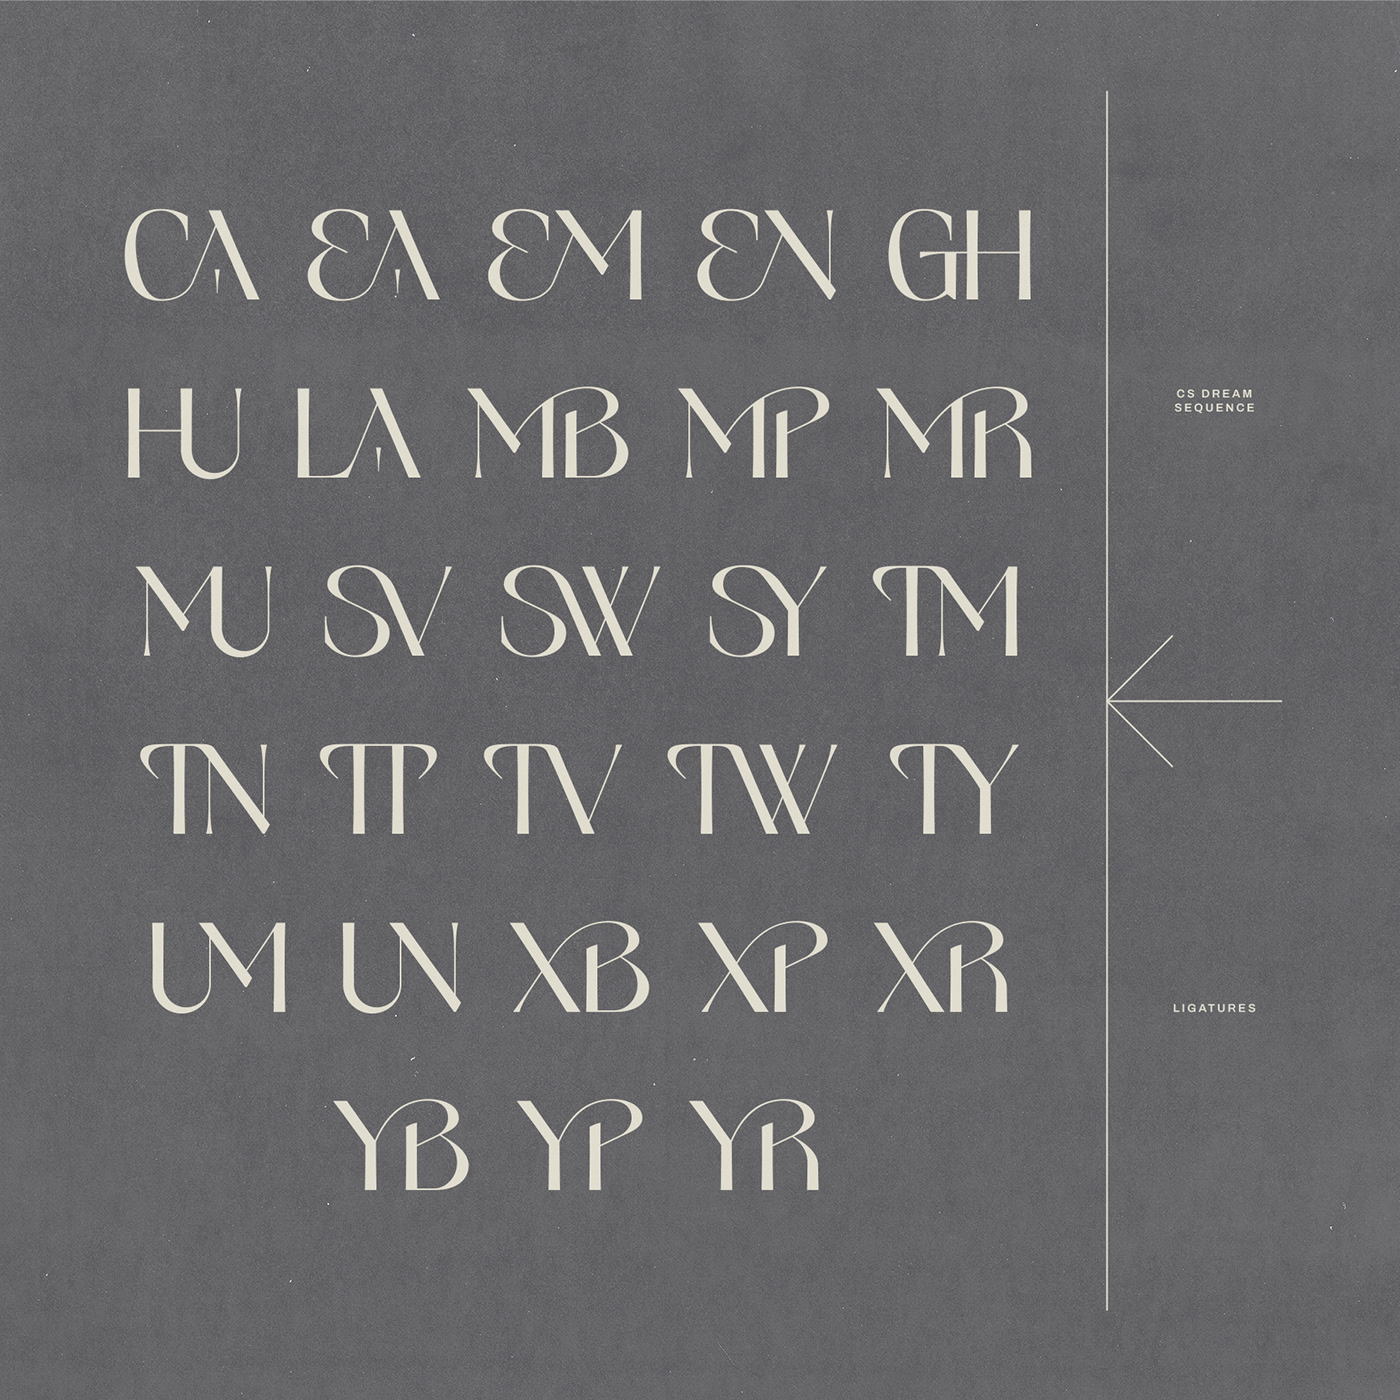 Display display font experimental font Typeface modern font ligature elegant type design font design